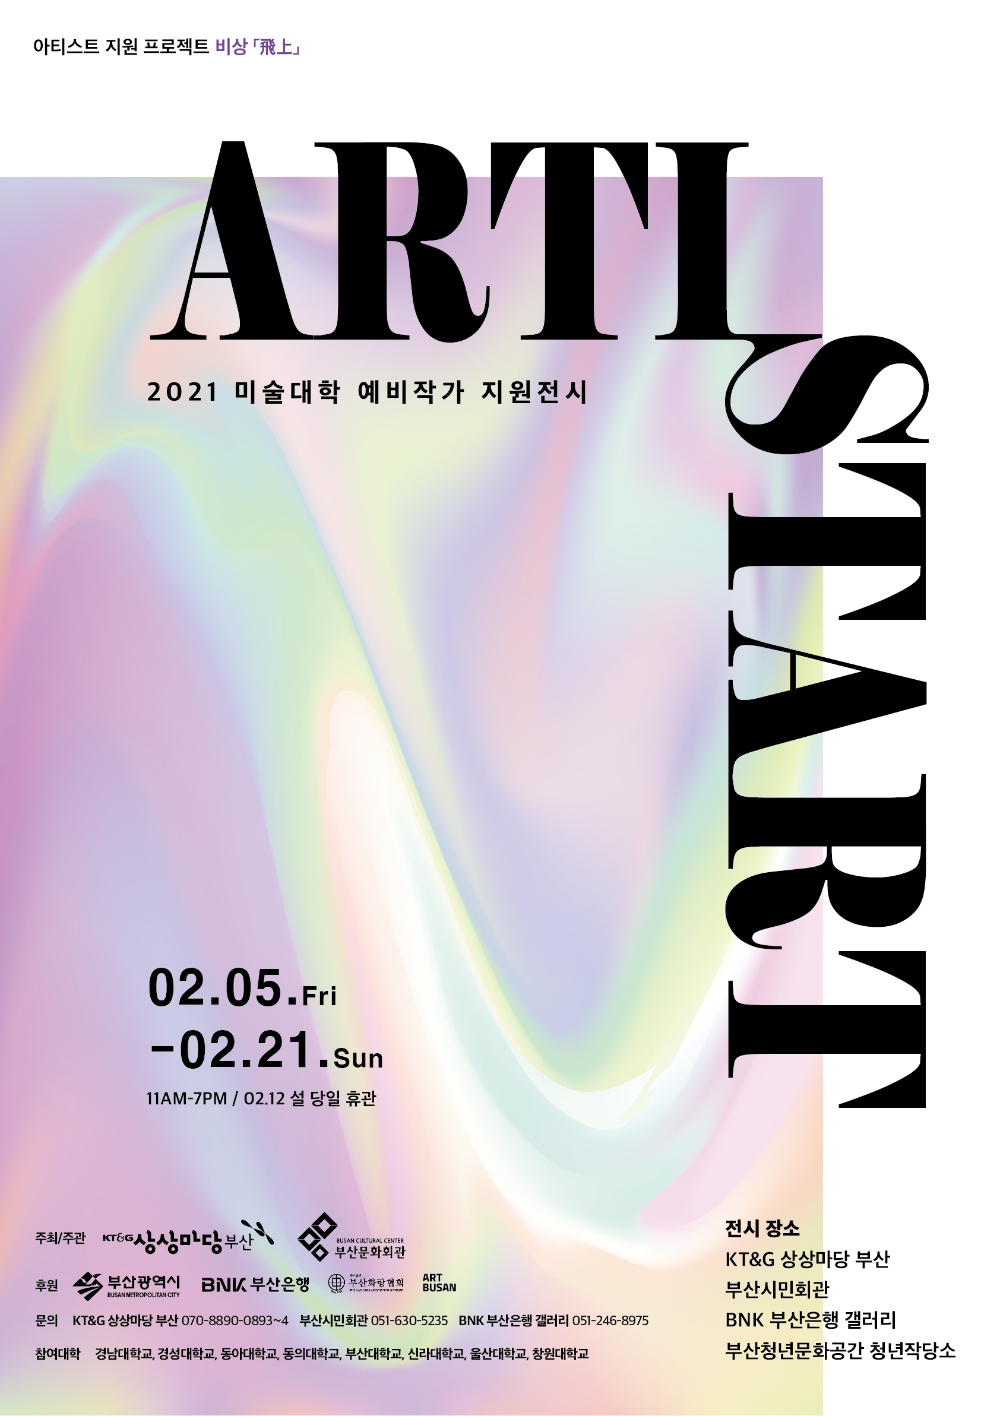 2021 미술대학 예비작가 지원전시 ‘제1회 ARTISTART’ 포스터 1부. / 사진제공 =KT&G